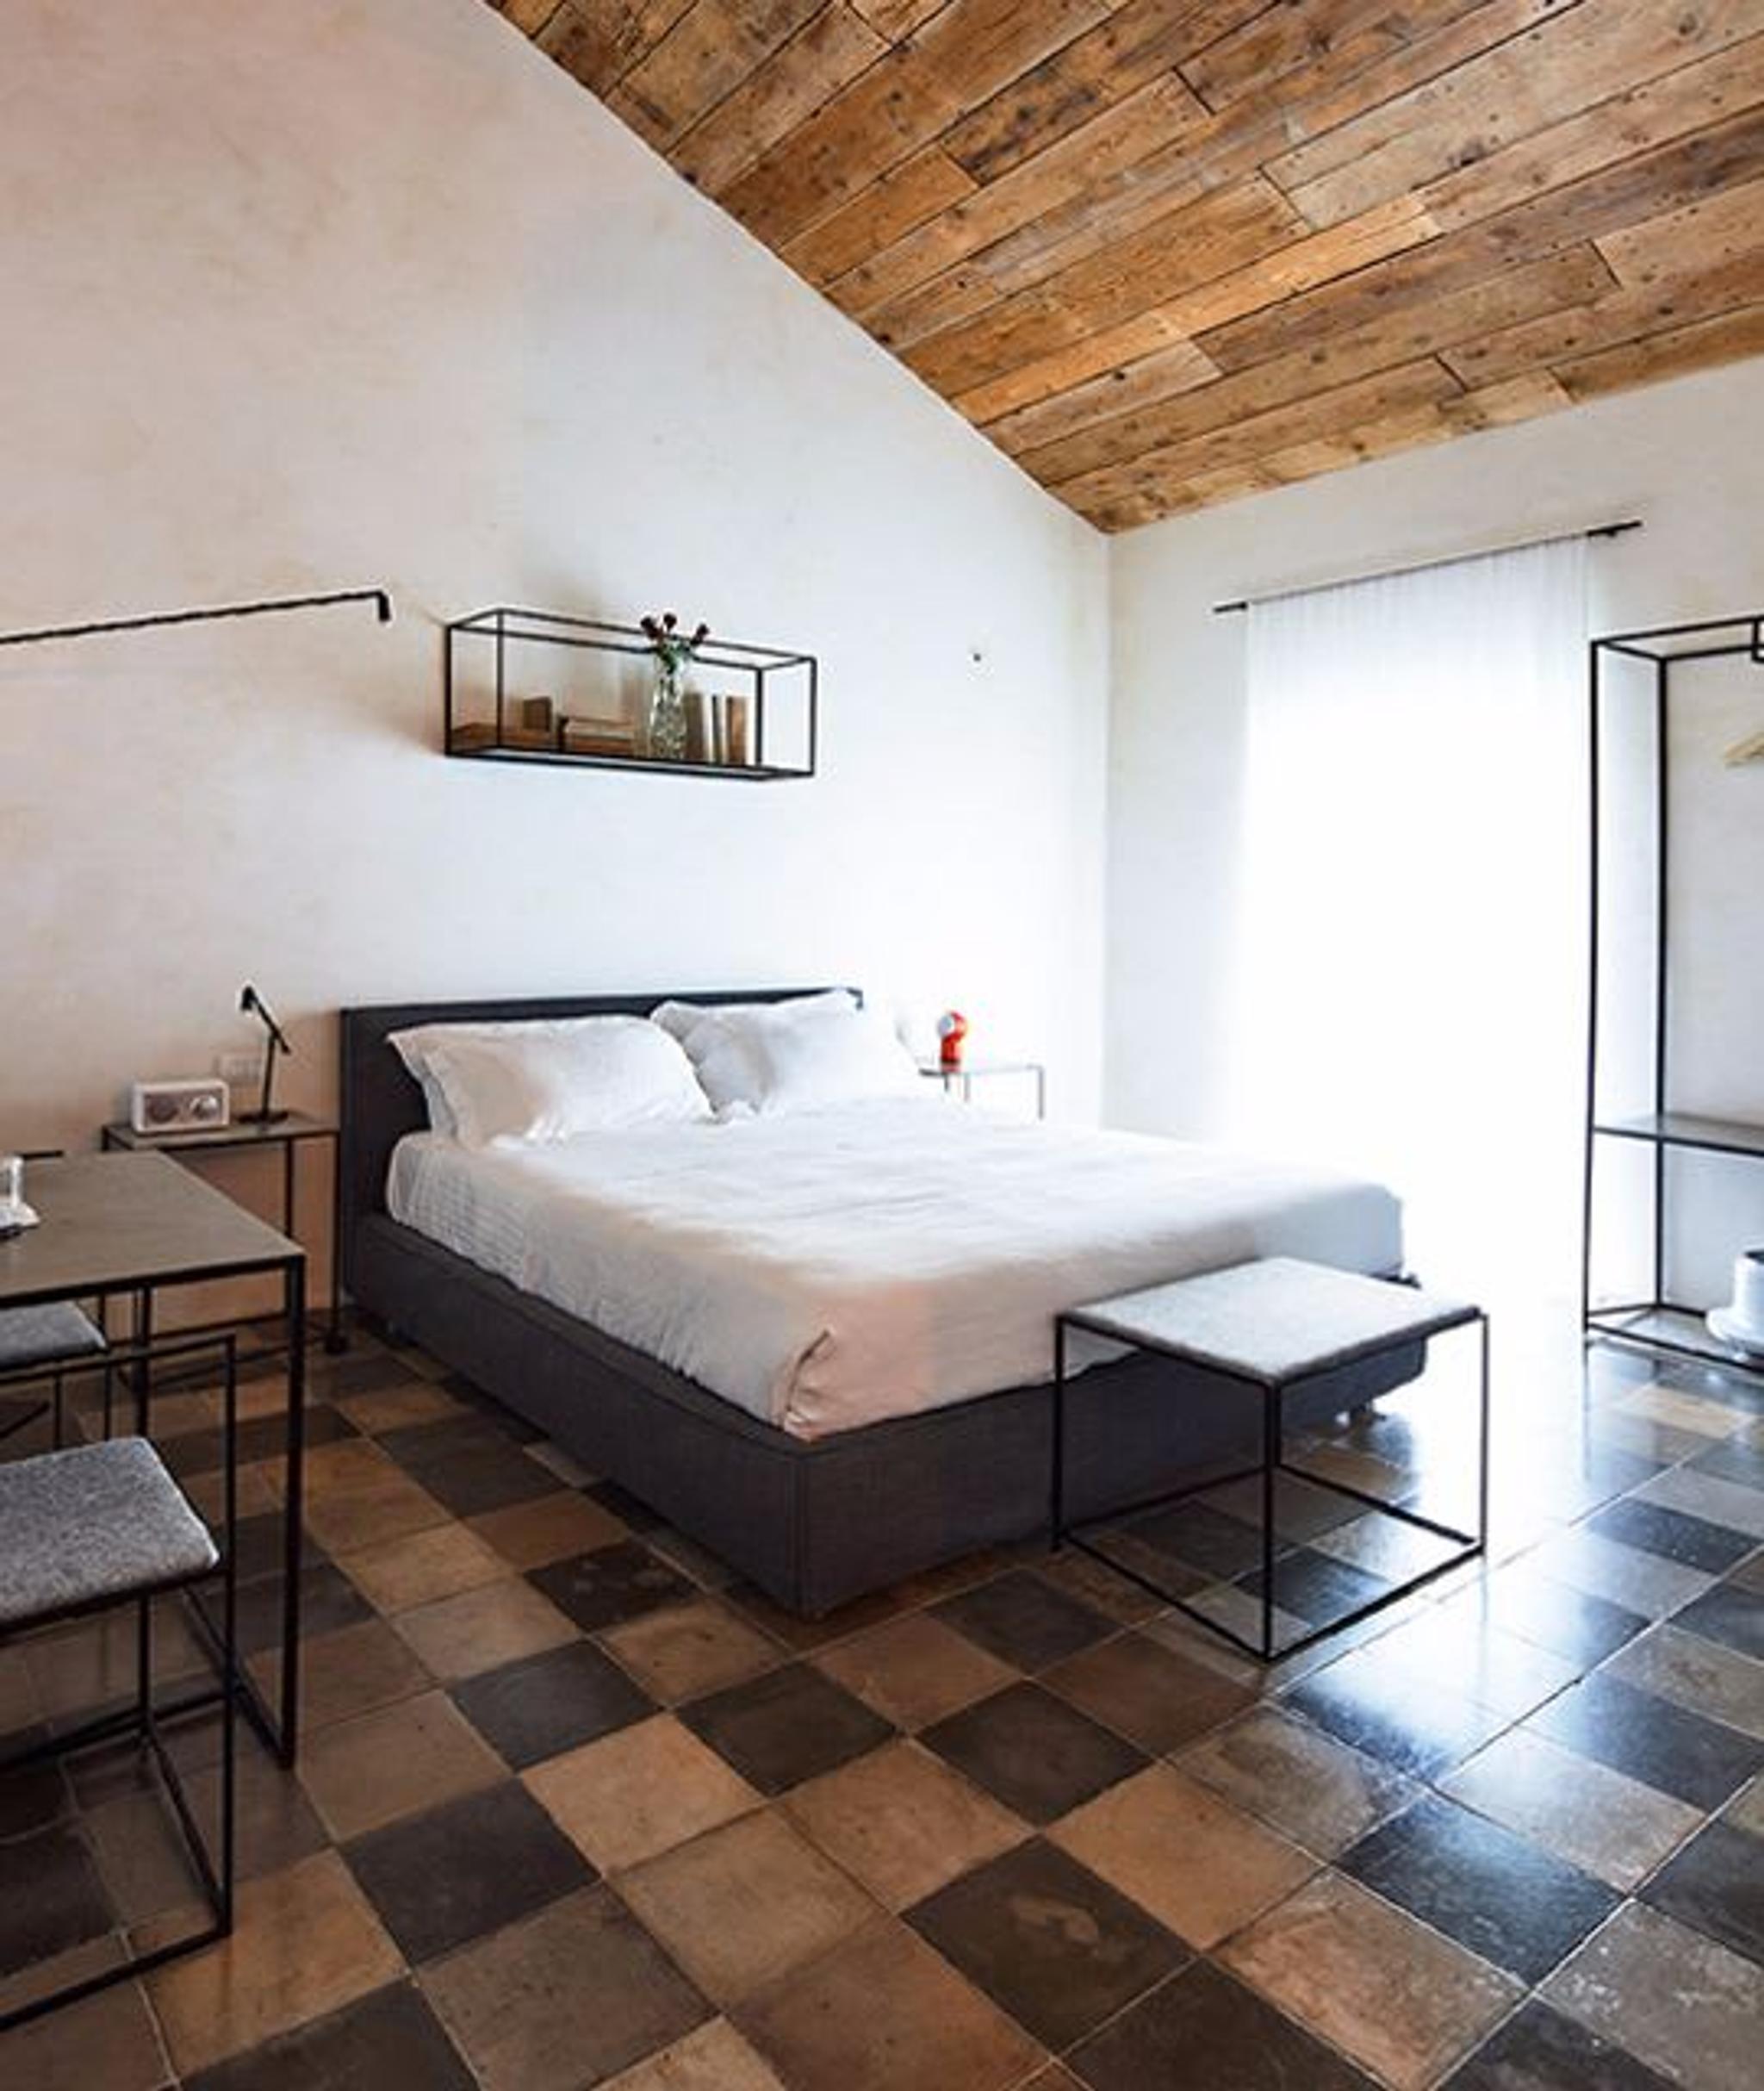 Soffitti in legno e pareti bianche si combinano per creare un'atmosfera essenziale e rilassante.